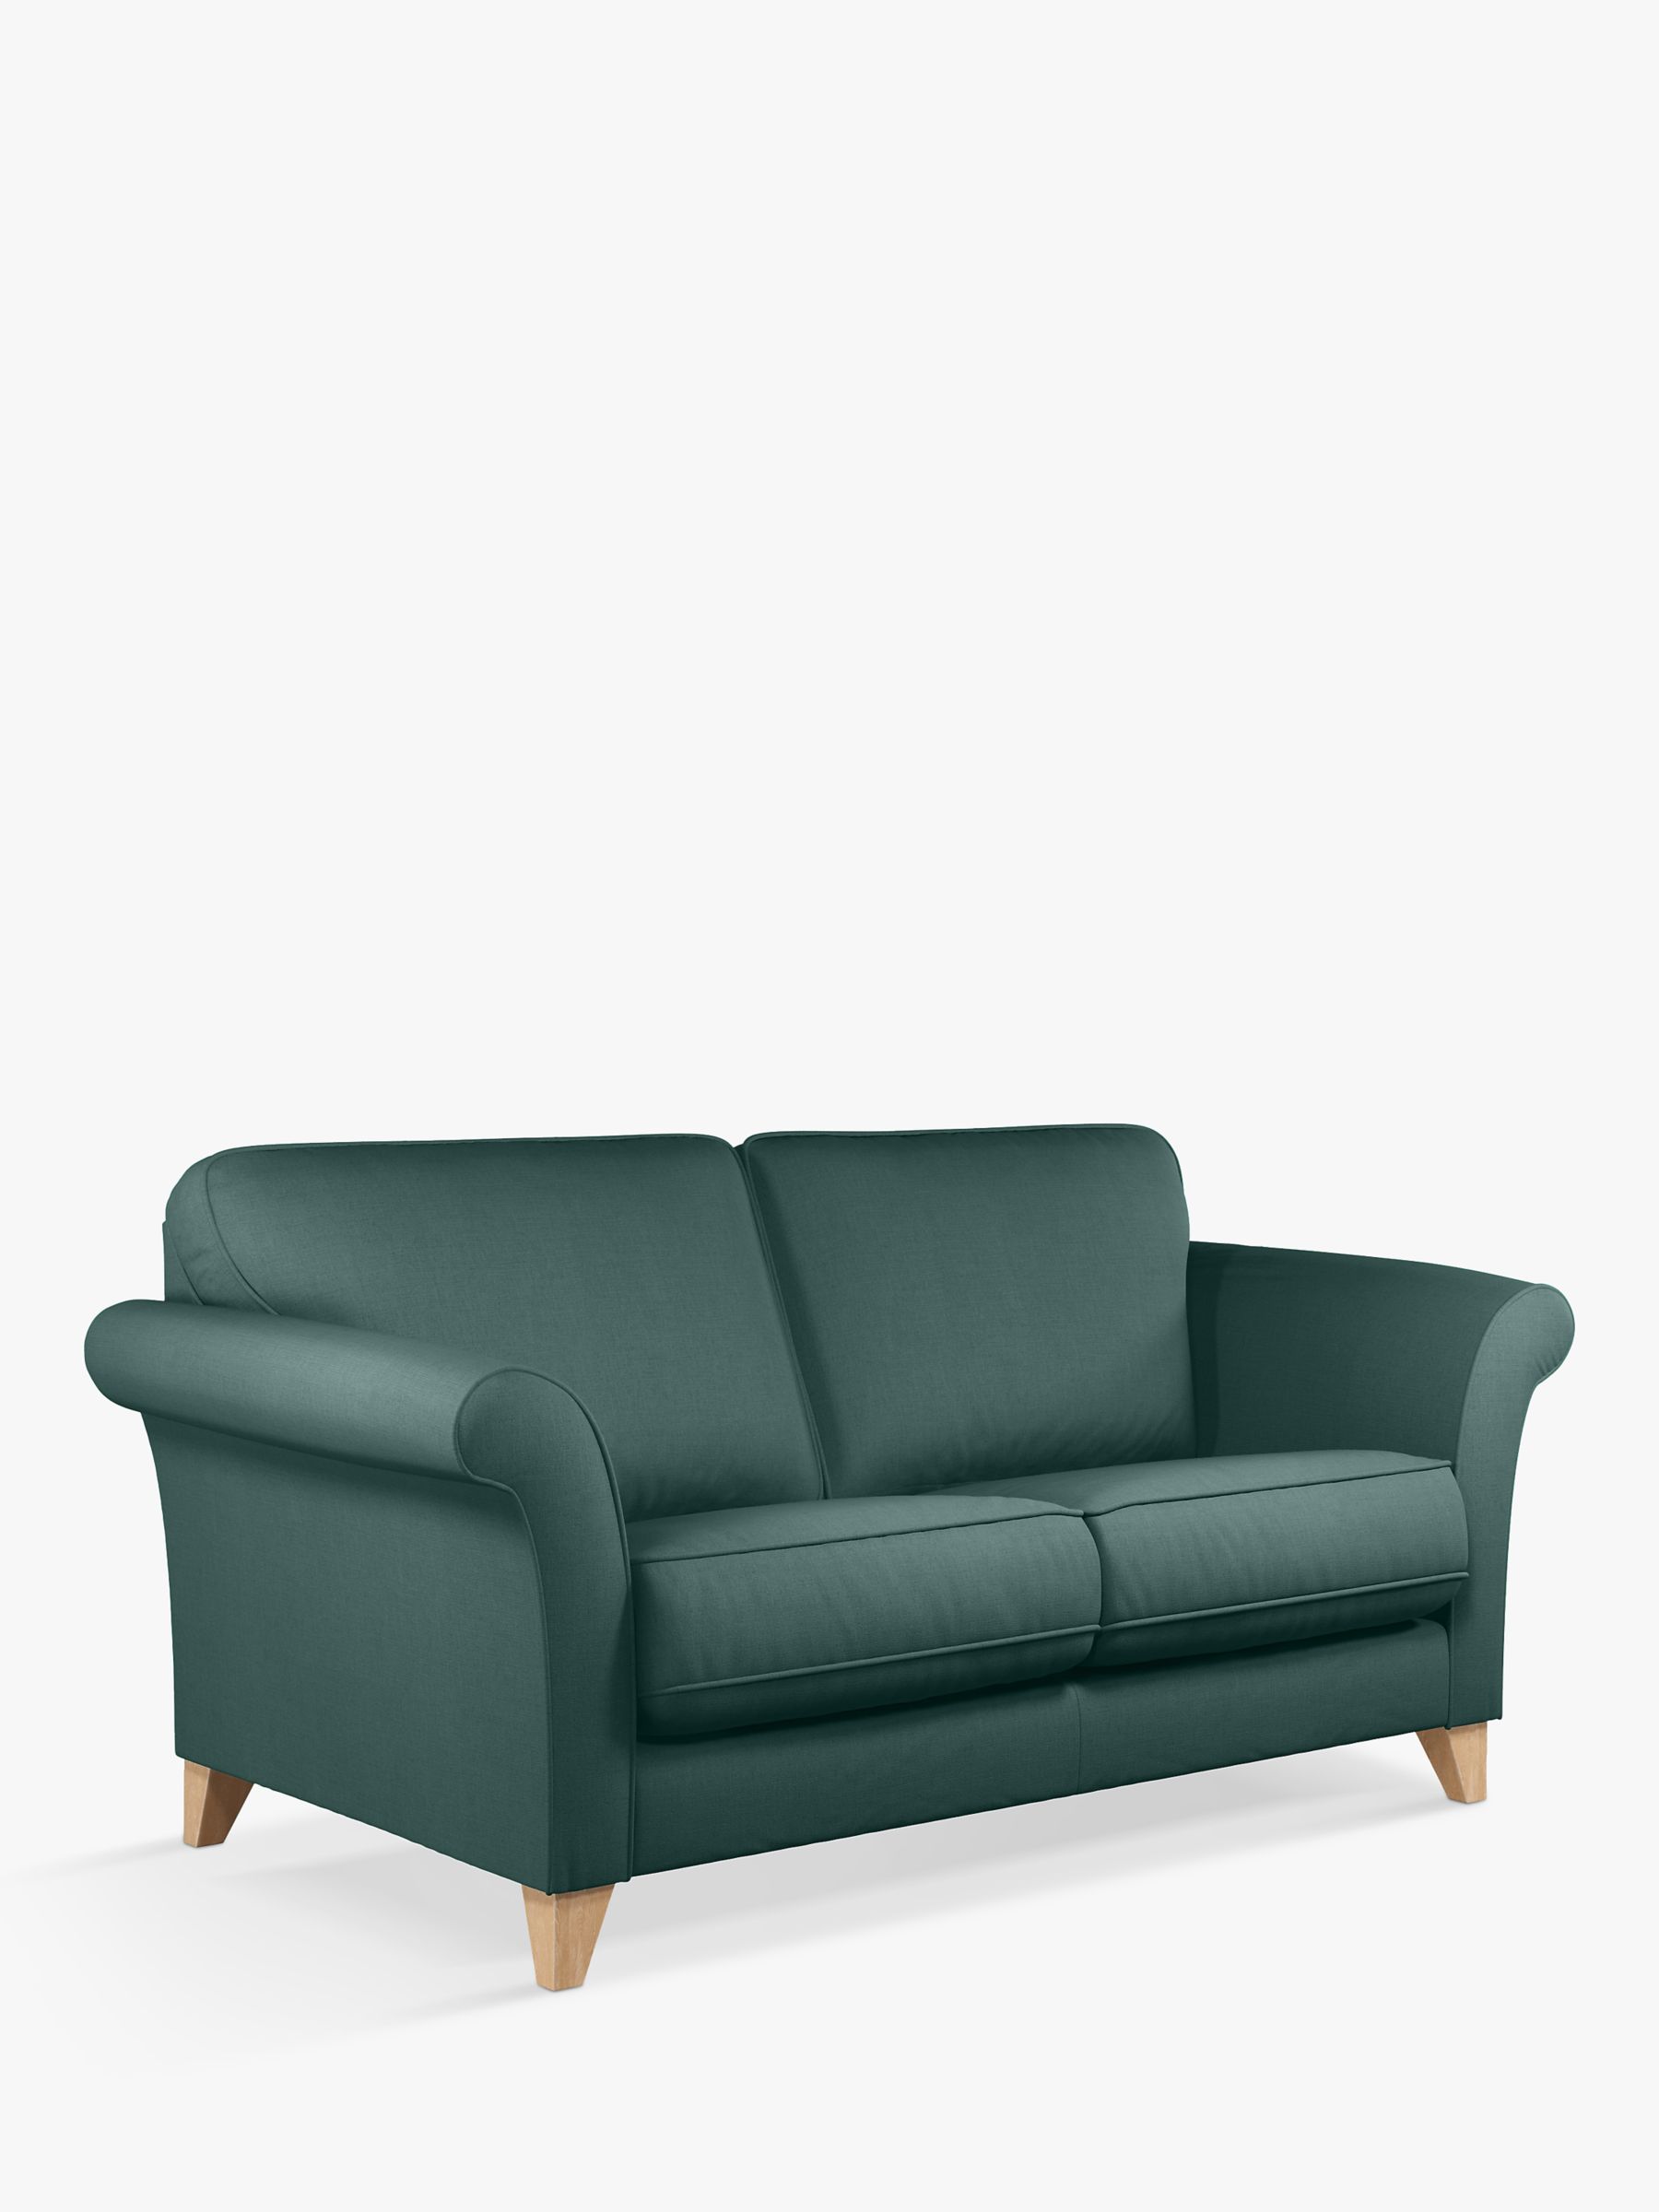 Charlotte Range, John Lewis Charlotte Large 3 Seater Sofa, Light Leg, Relaxed Linen Green Nettle